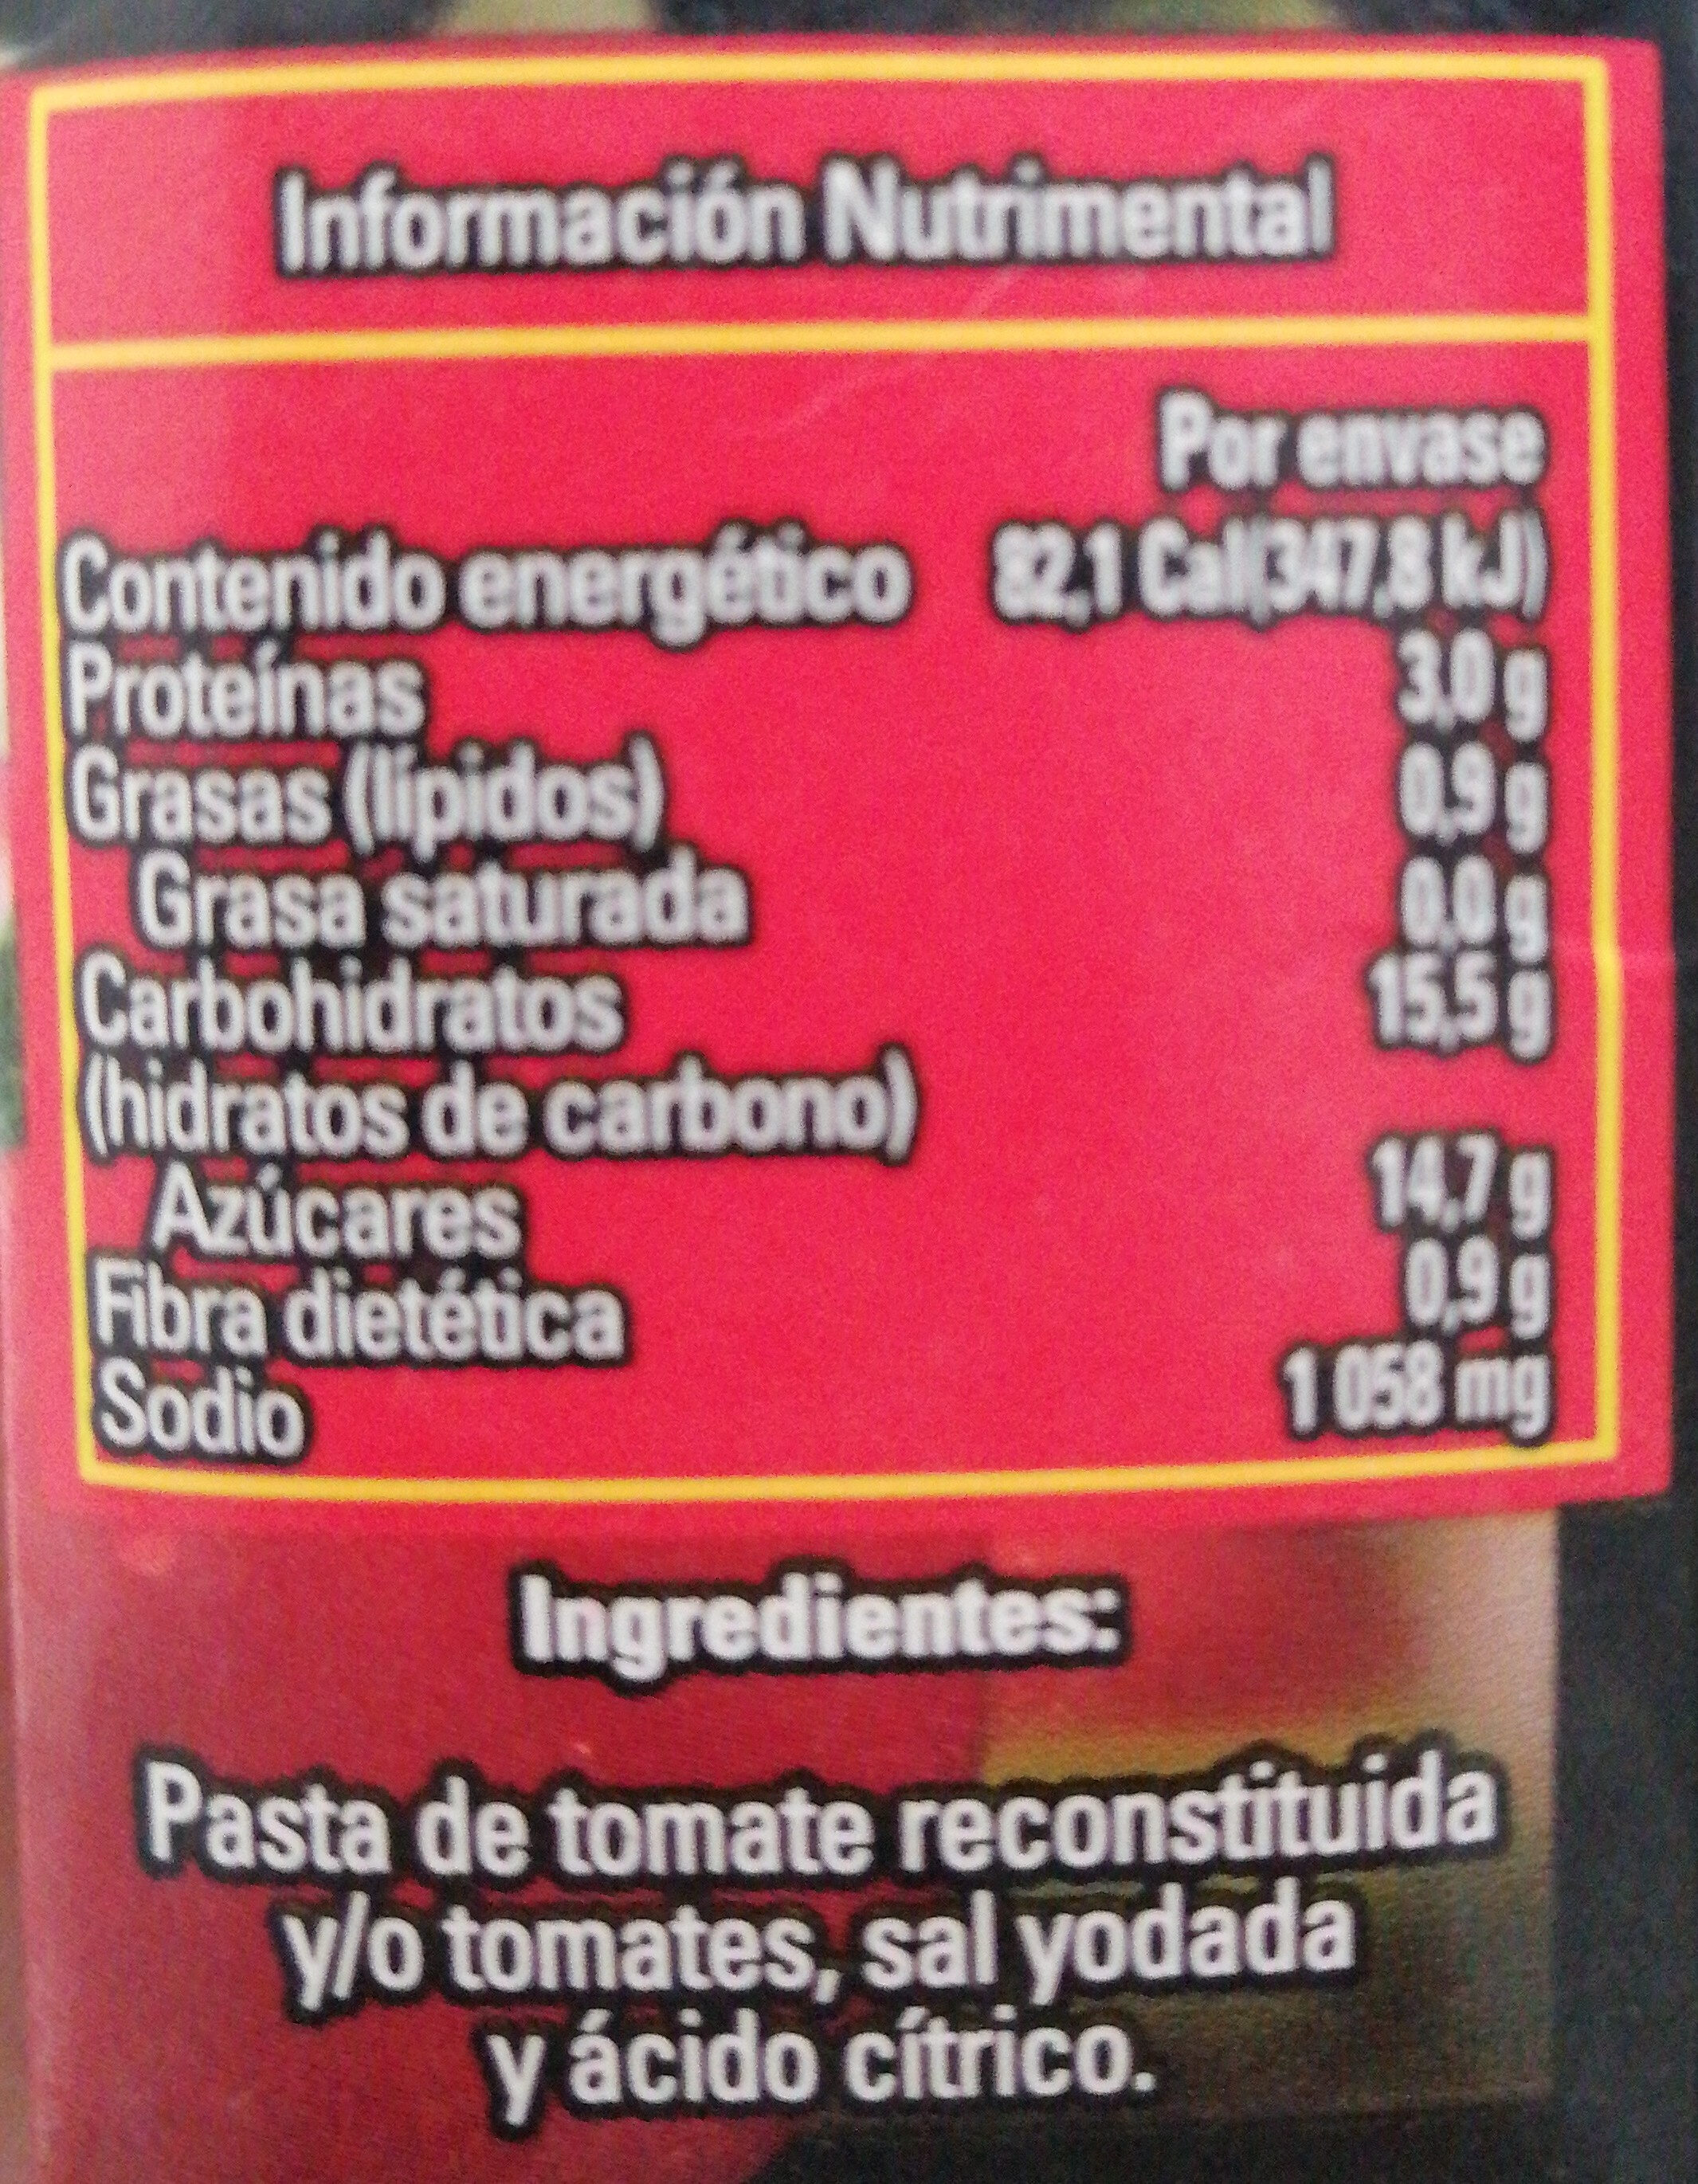 Puré de tomate - Ingredients - es